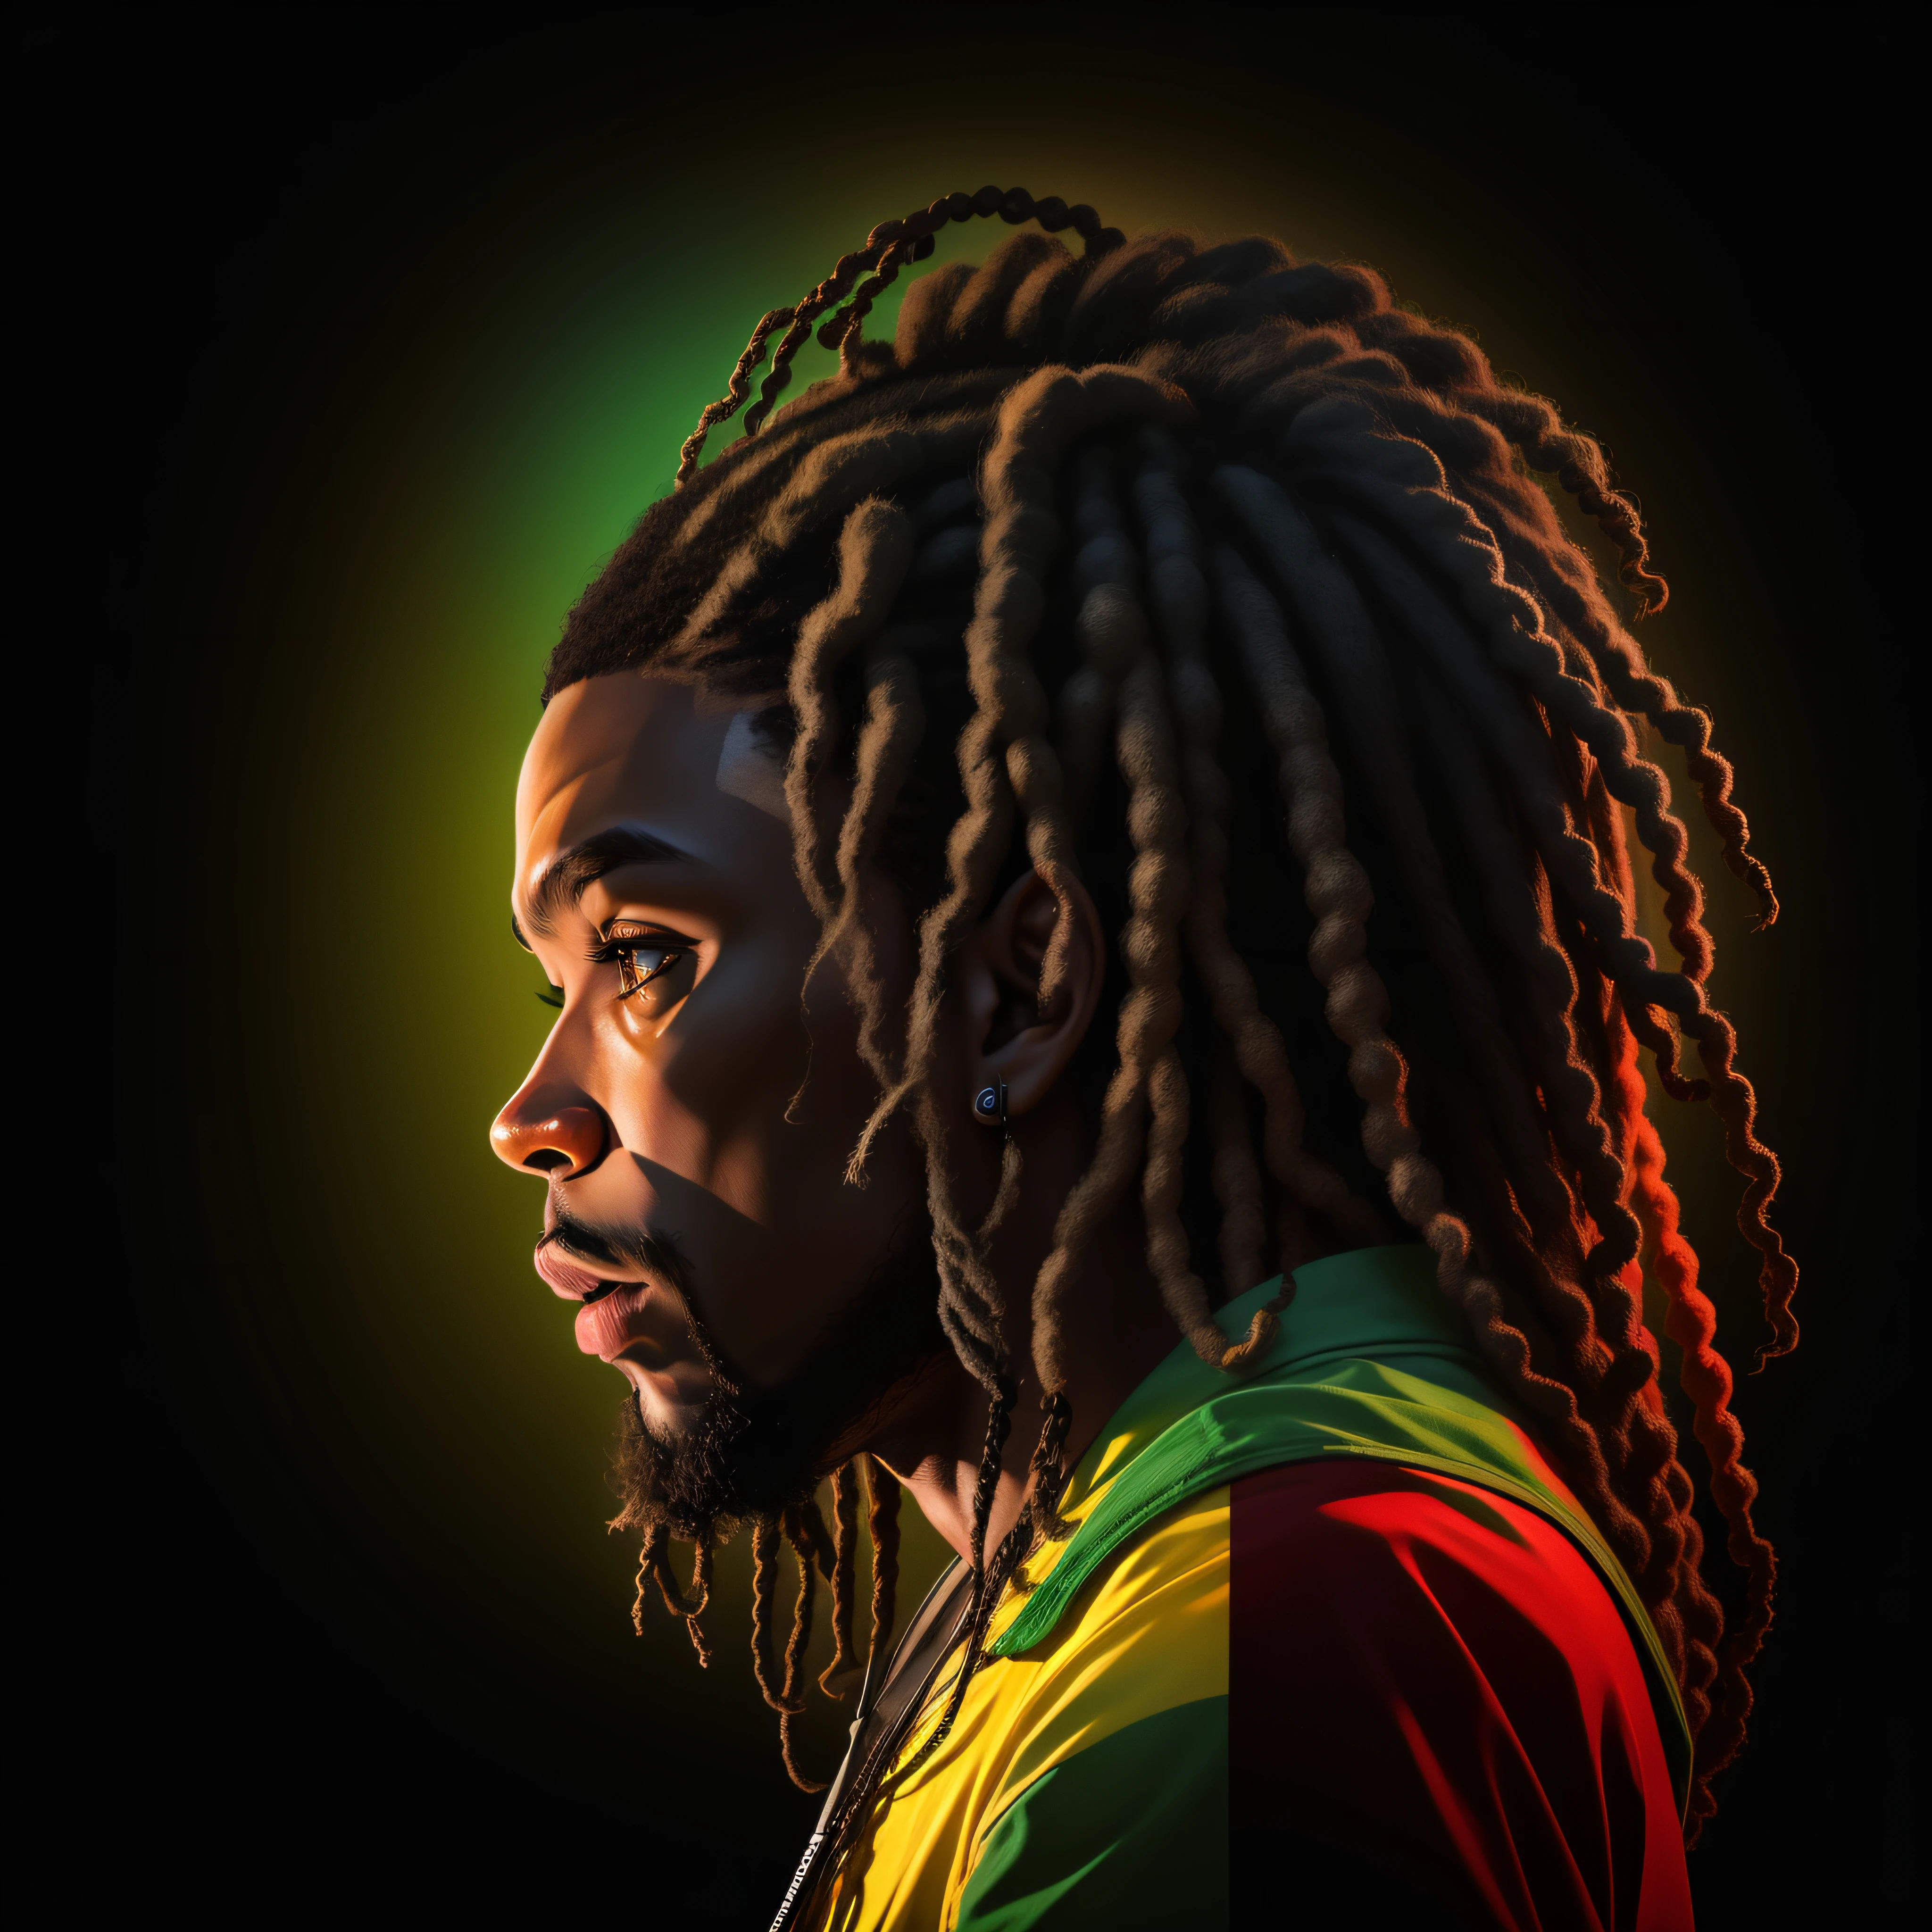 Erstellen Sie ein Logo mit dem Kopf eines schwarzen Mannes mit Dreadlocks in schwarzen Farben, verde, gelb und rot (ich freue mich auf) , Bildstil Logo , Sober, (schwarzer Hintergrund), Bild mit einer Auflösung von mindestens 300 dpi, UHD 8k, Sehr hohe Qualität für exzellenten Druck. Beleuchtung, die die Figur im Verhältnis zum Hintergrund hervorhebt, Reggae-Farben, Disk-Layer-Stil